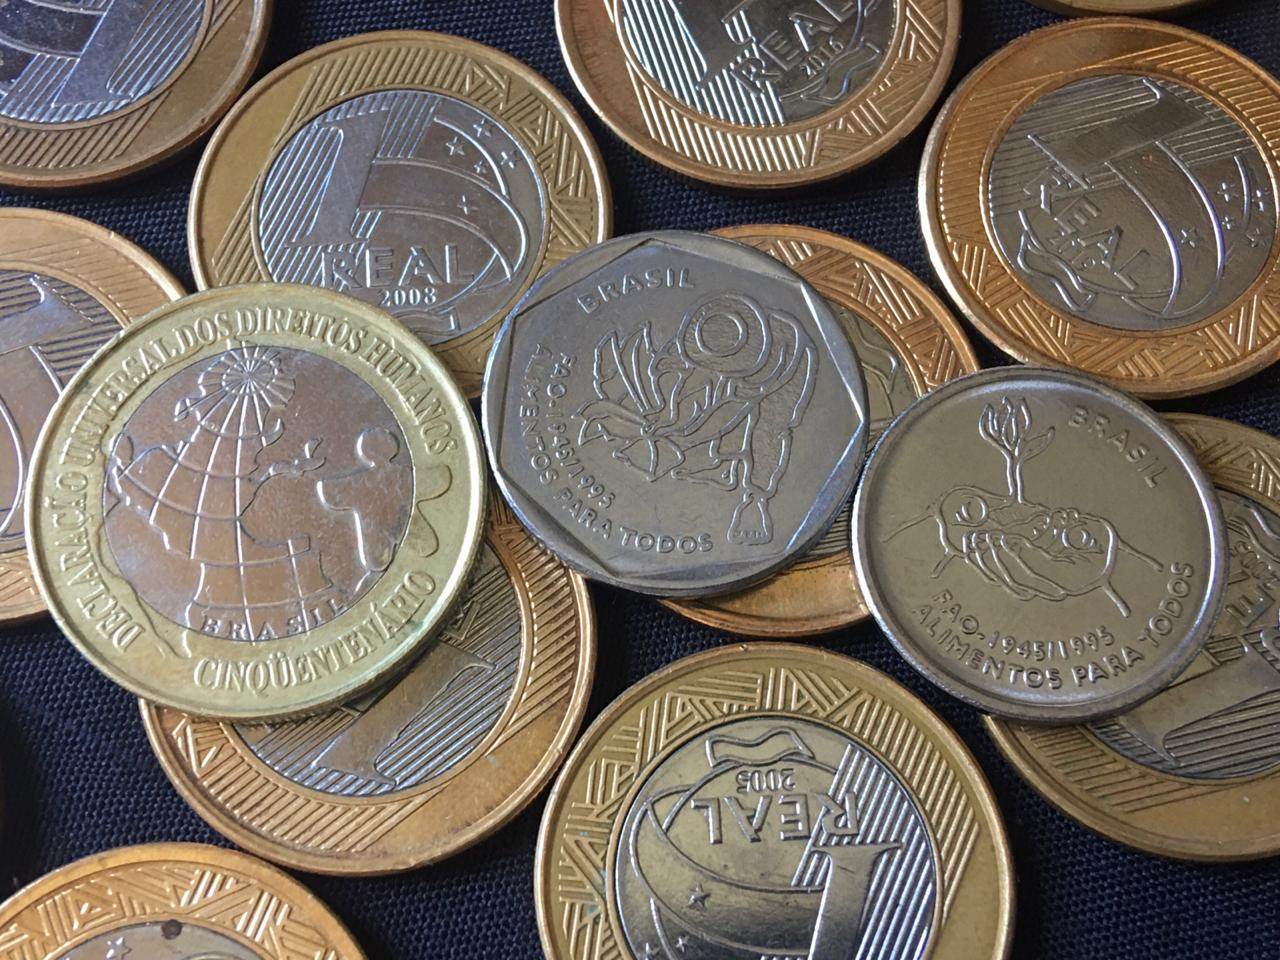 Em destaque, moedas comemorativas do Real com baixa tiragem